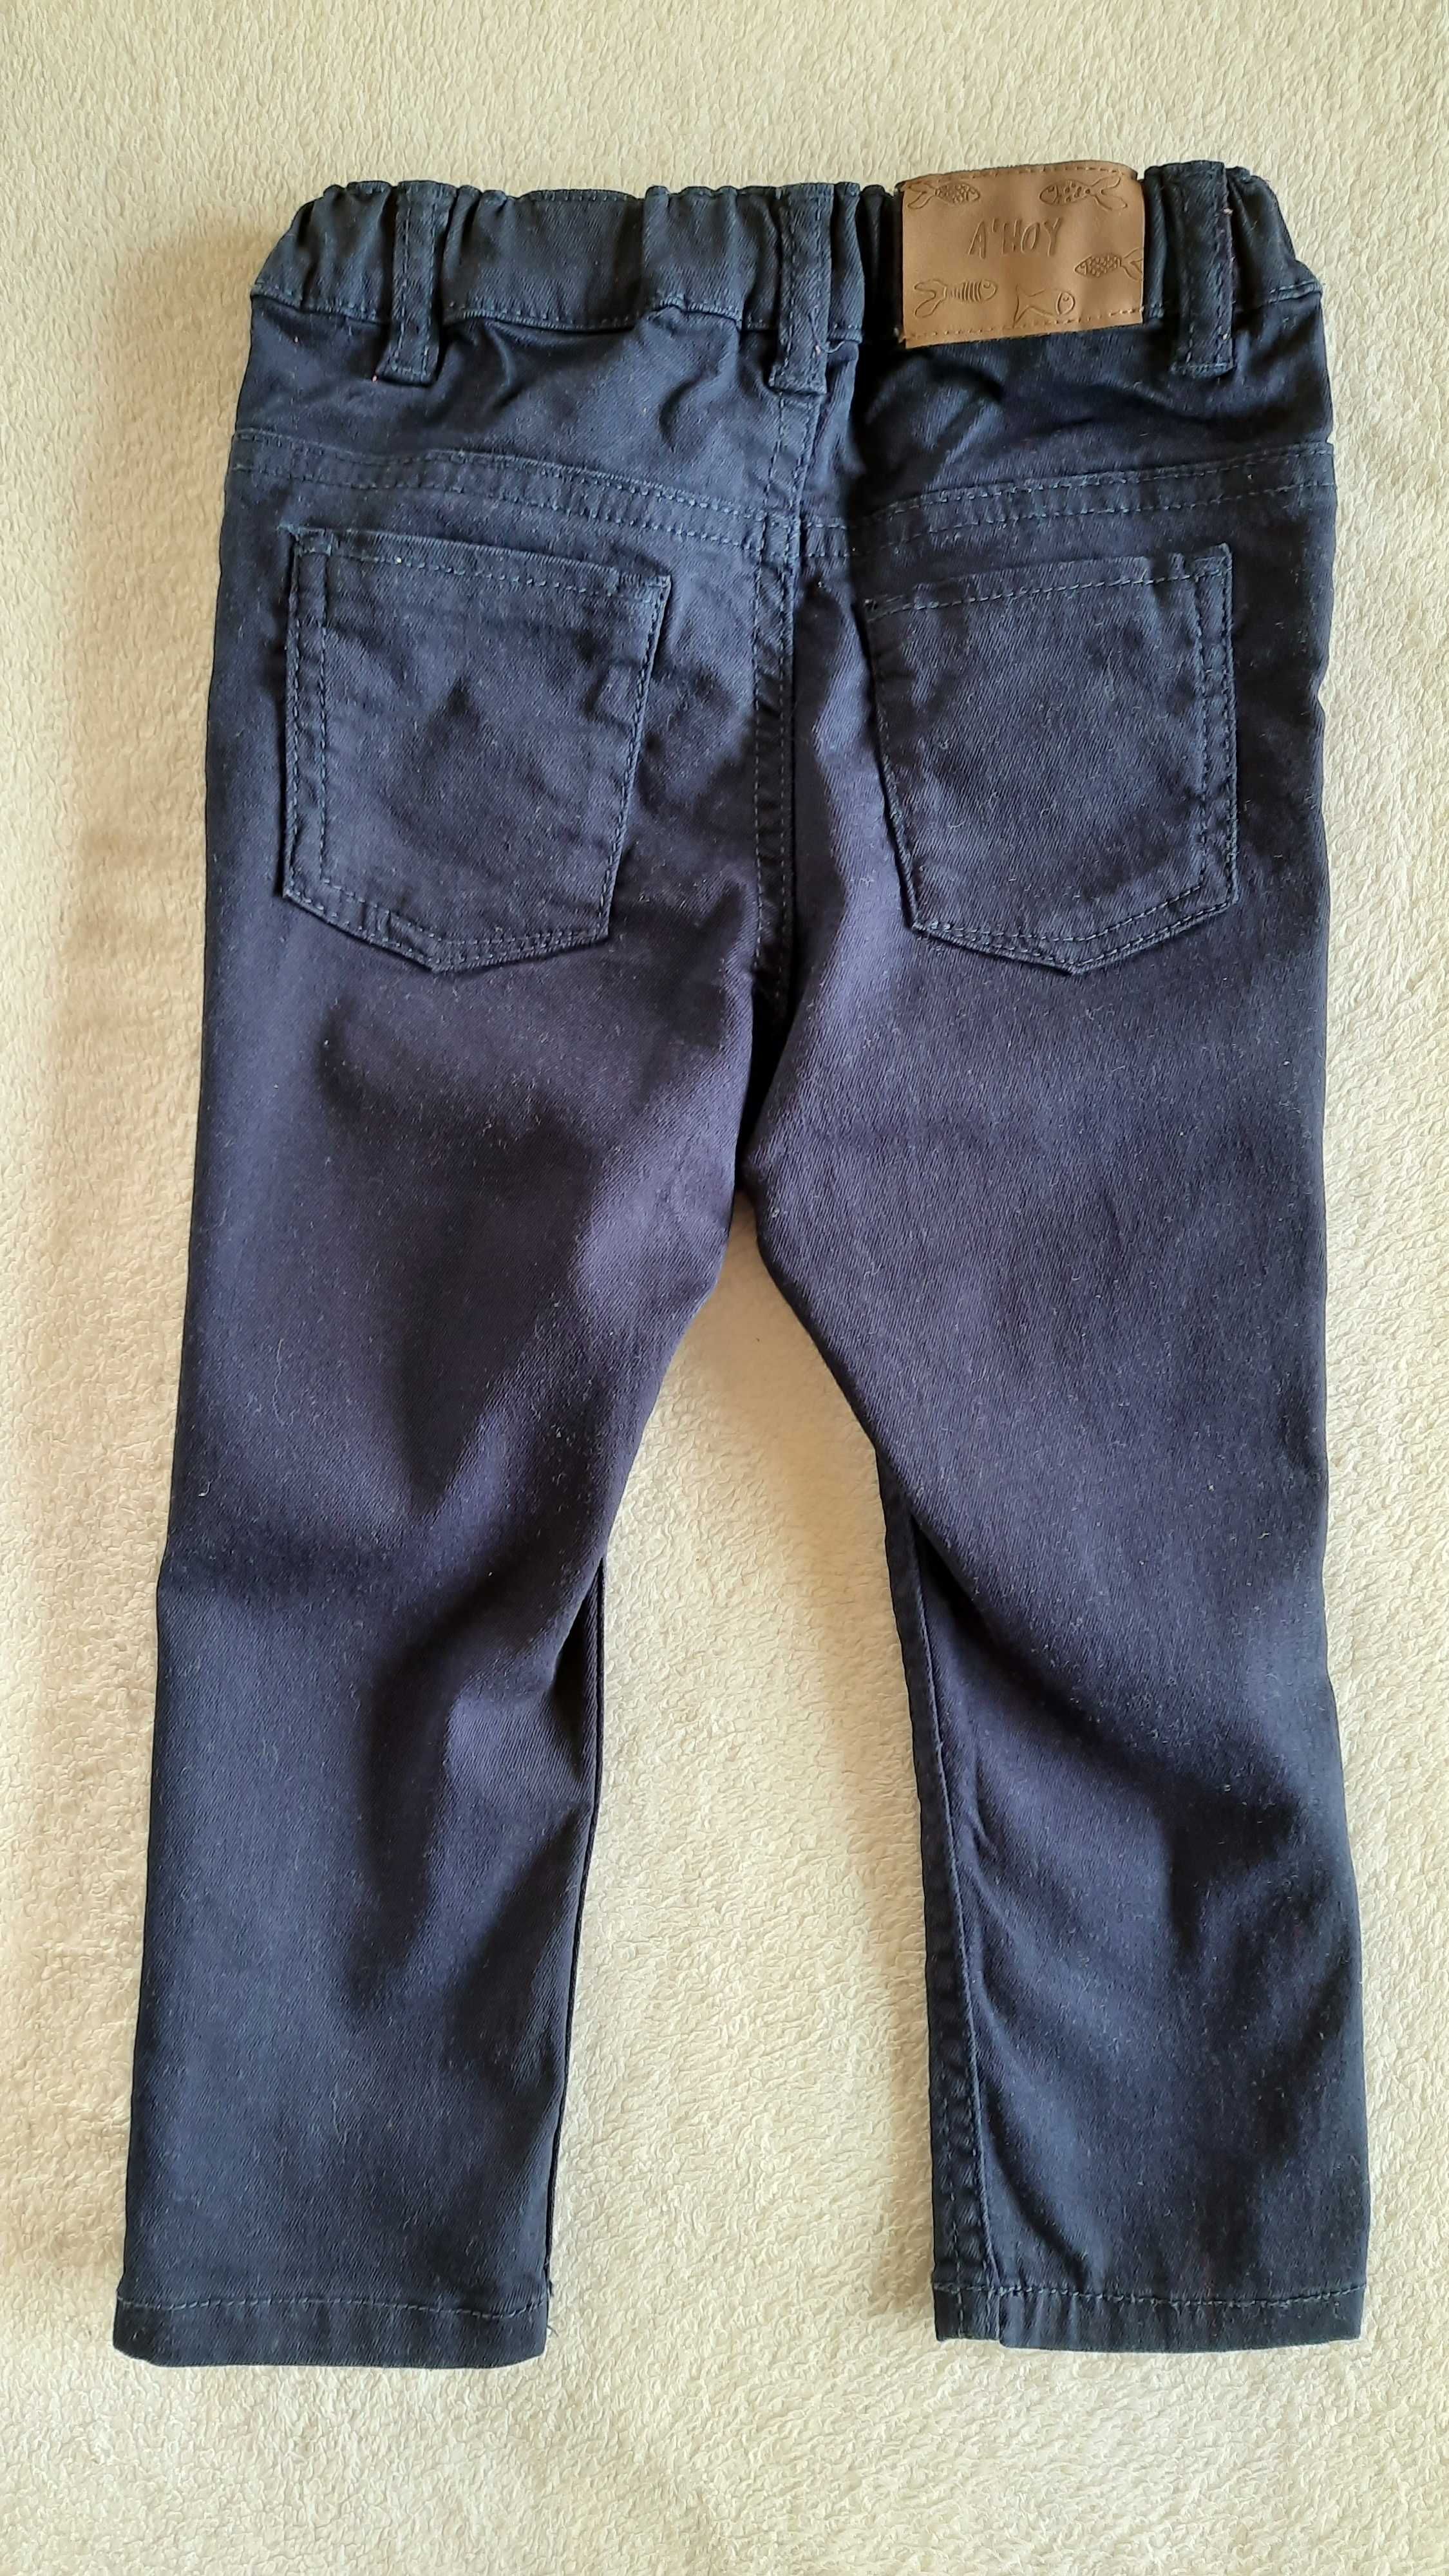 Spodnie chłopięce jeansy h&m, rozm. 86.